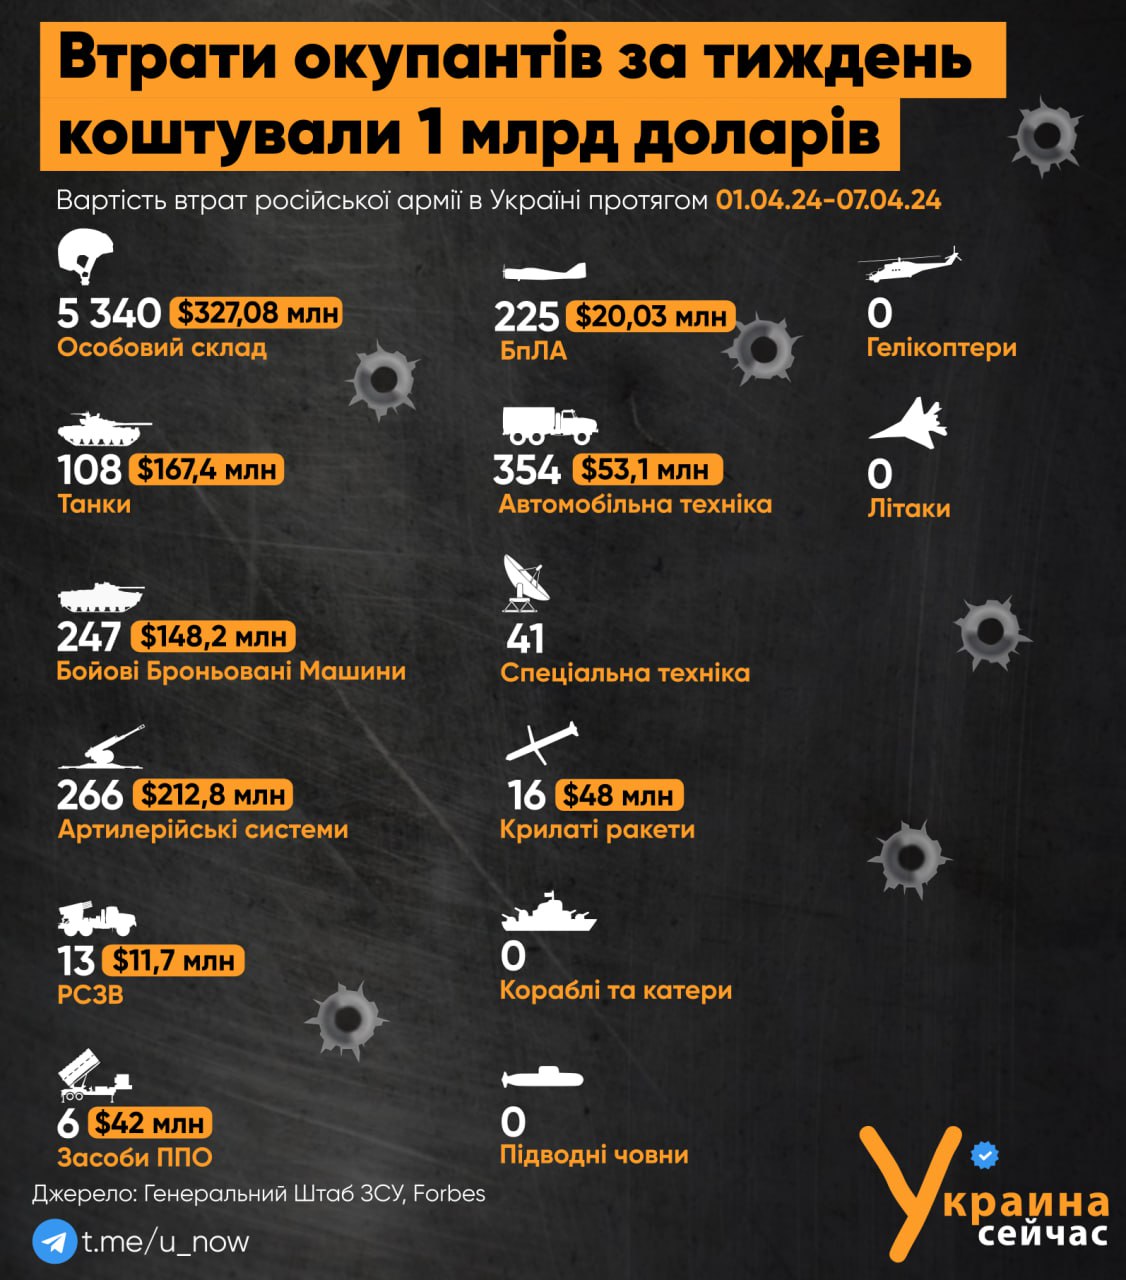 Окупанти за тиждень втратили в Україні близько $1 млрд